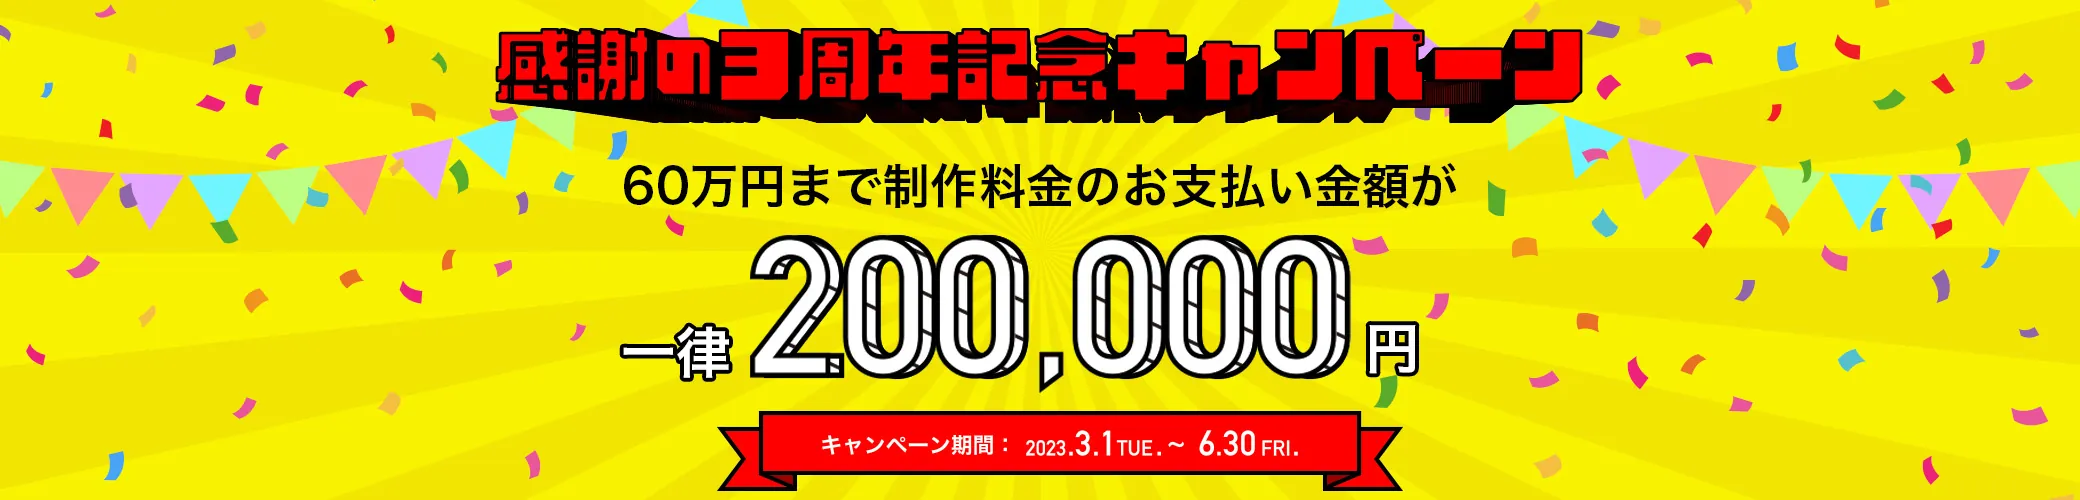 感謝の2周年記念キャンペーン。60万円まで制作料金のお支払い金額が一律20万円。キャンペーン期間は2023年3月1日から6月30日まで。